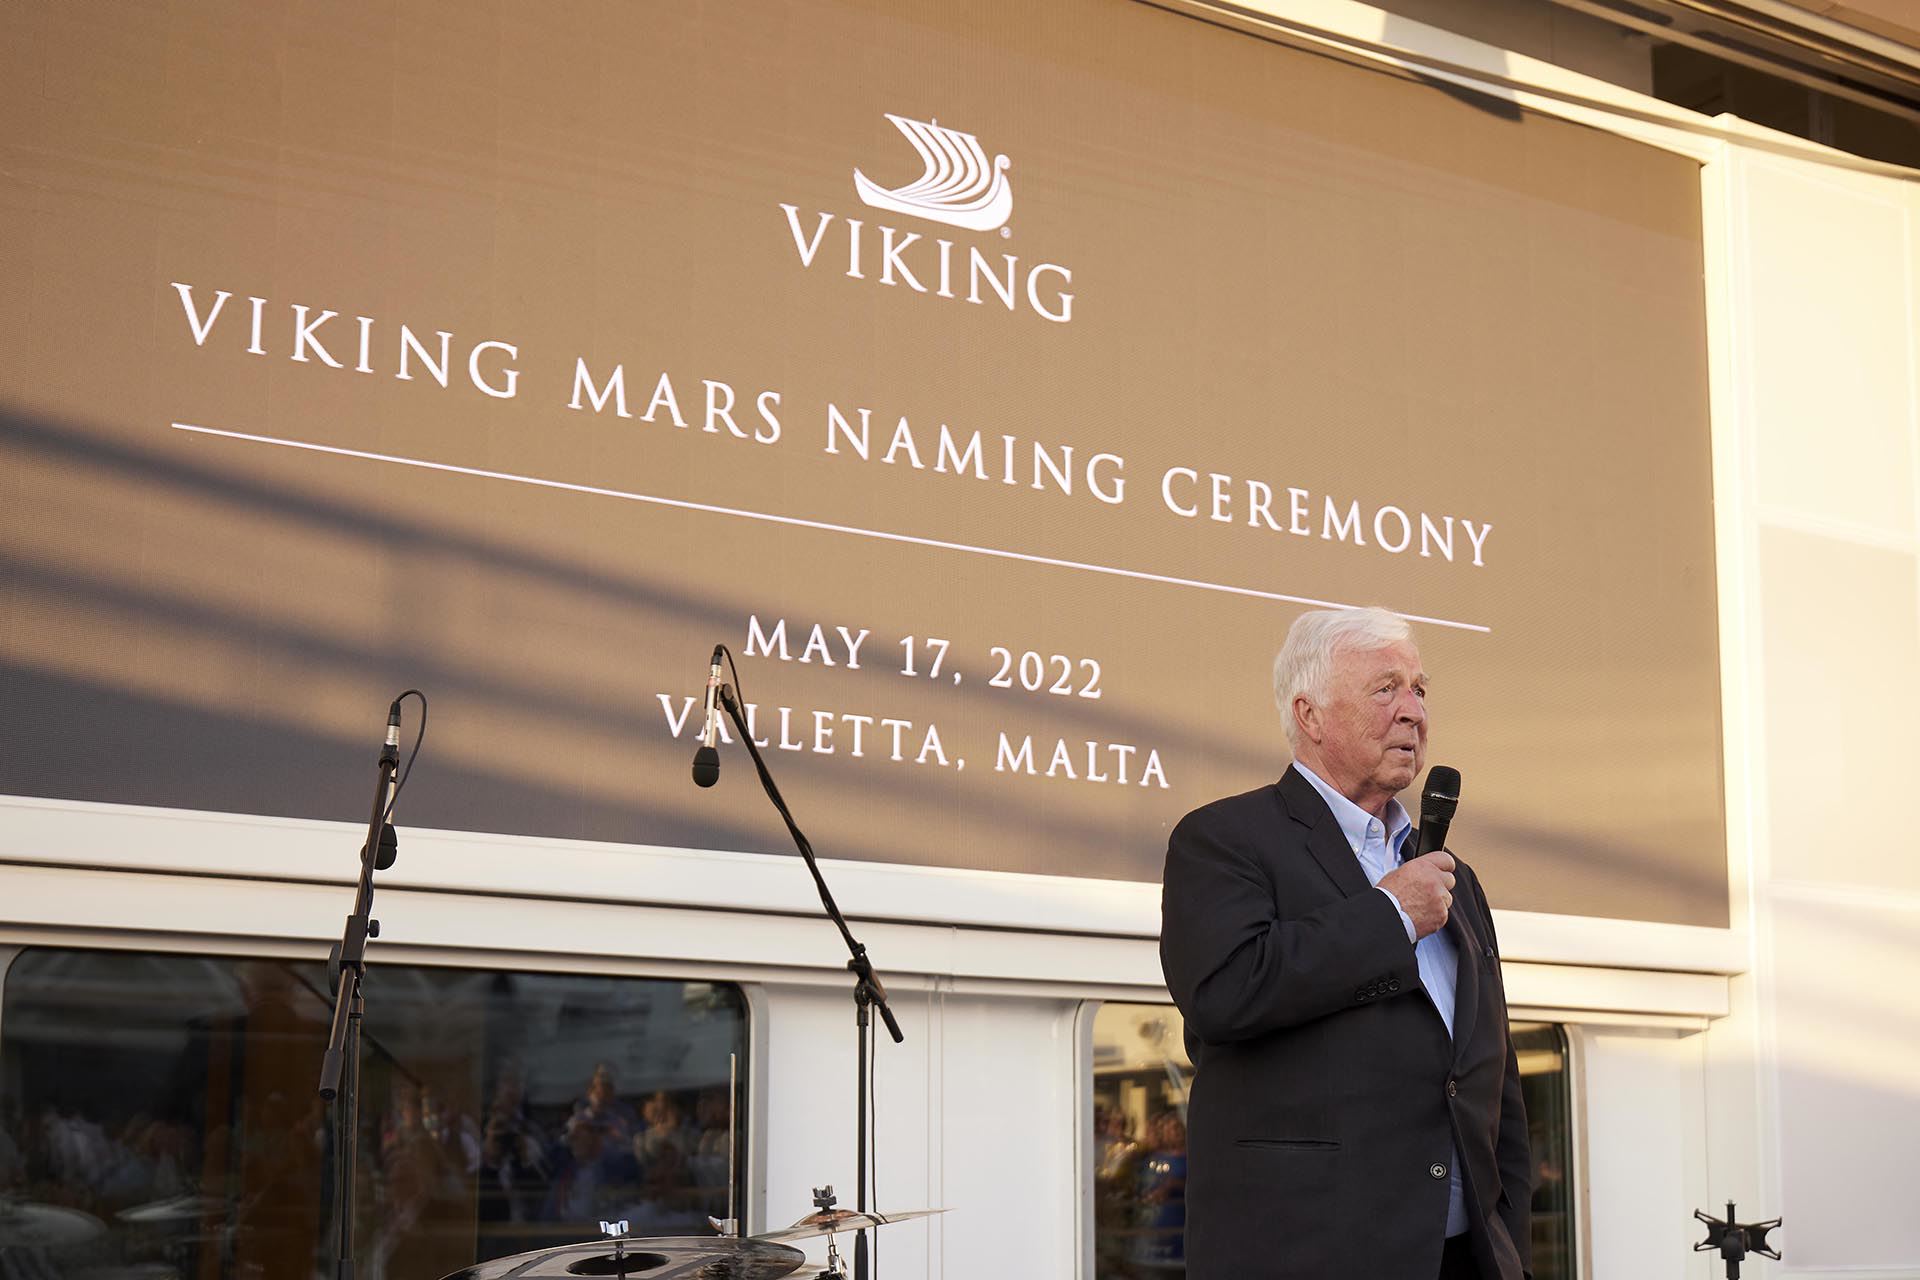 Ceremonia de nombramiento del Viking Mars